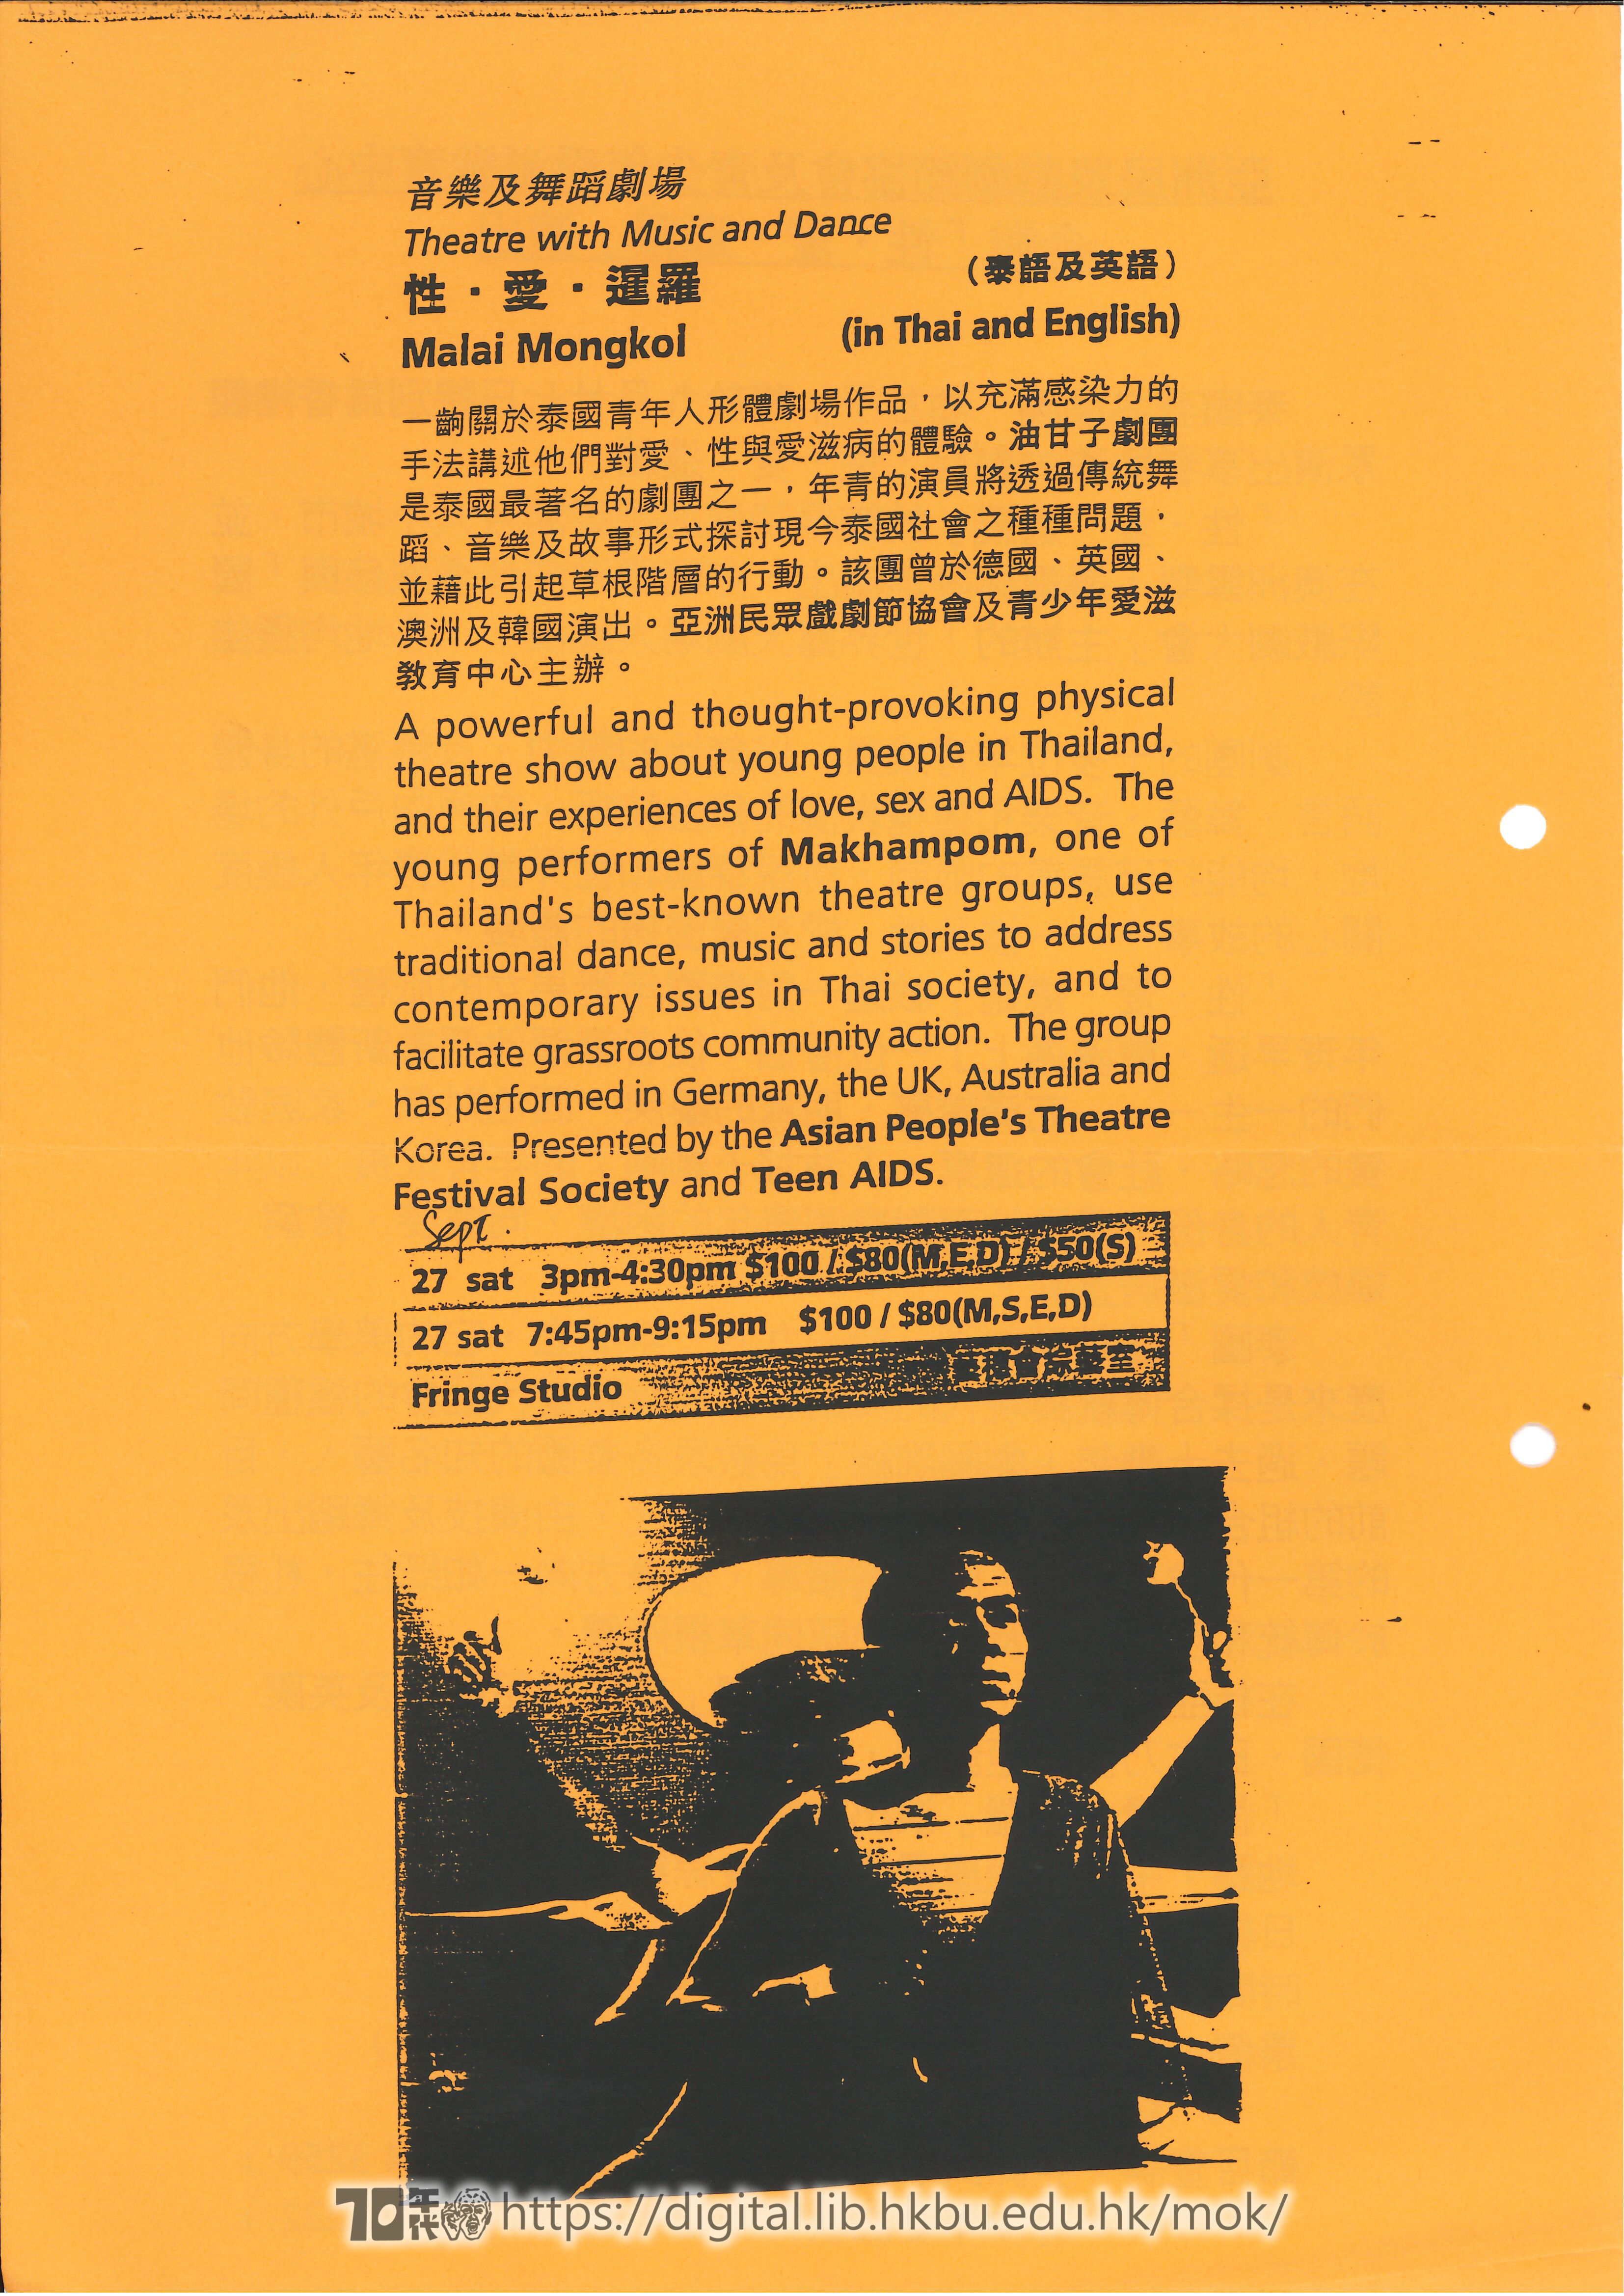 社區劇場  亞洲民衆戲劇節協會及青少年愛滋教育中心合辦「性•愛•暹羅」演出 宣傳單張  